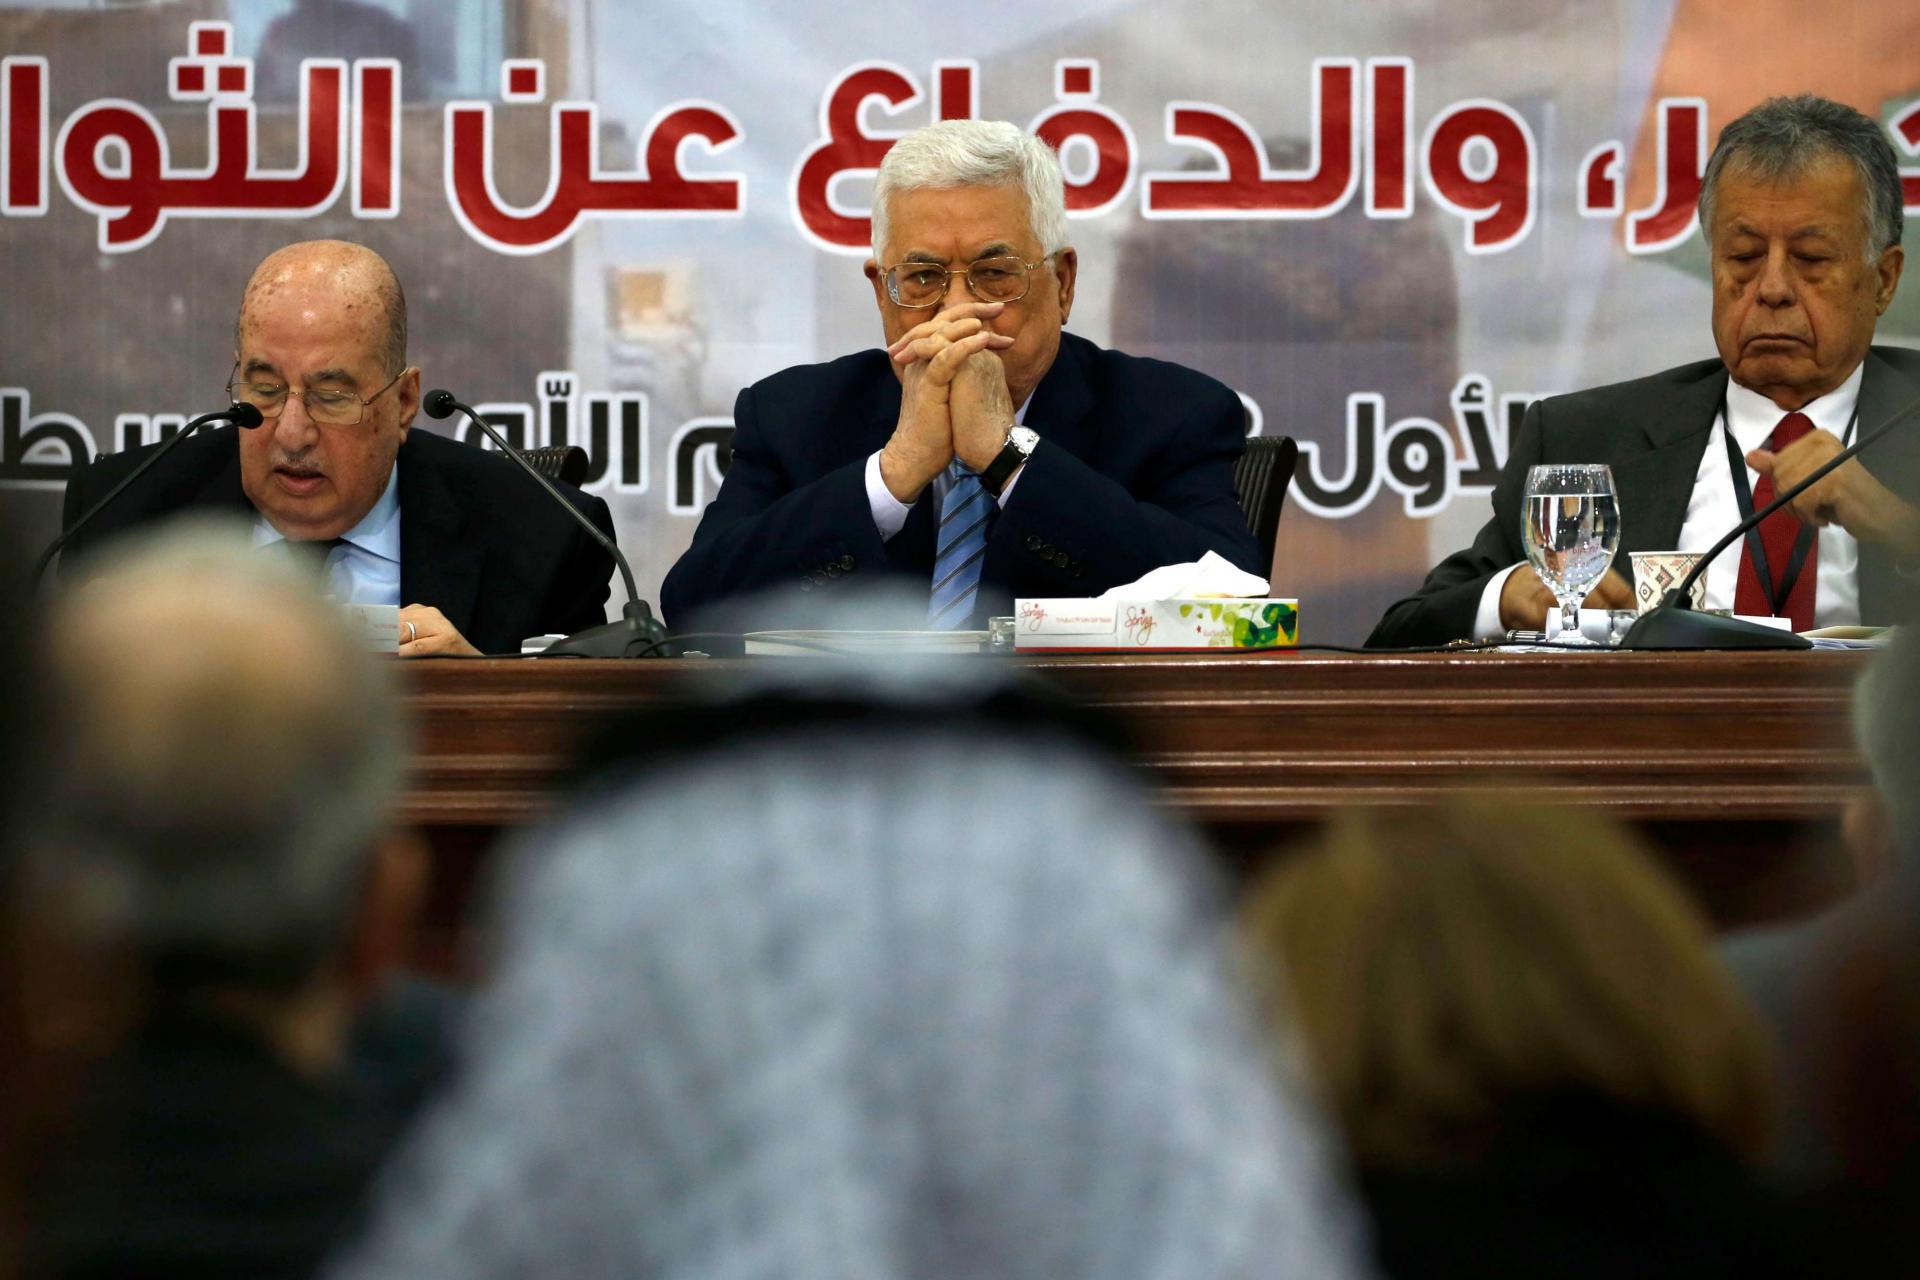 عباس المعني الأول بتنفيذ قرارات المجلس في أي وقت